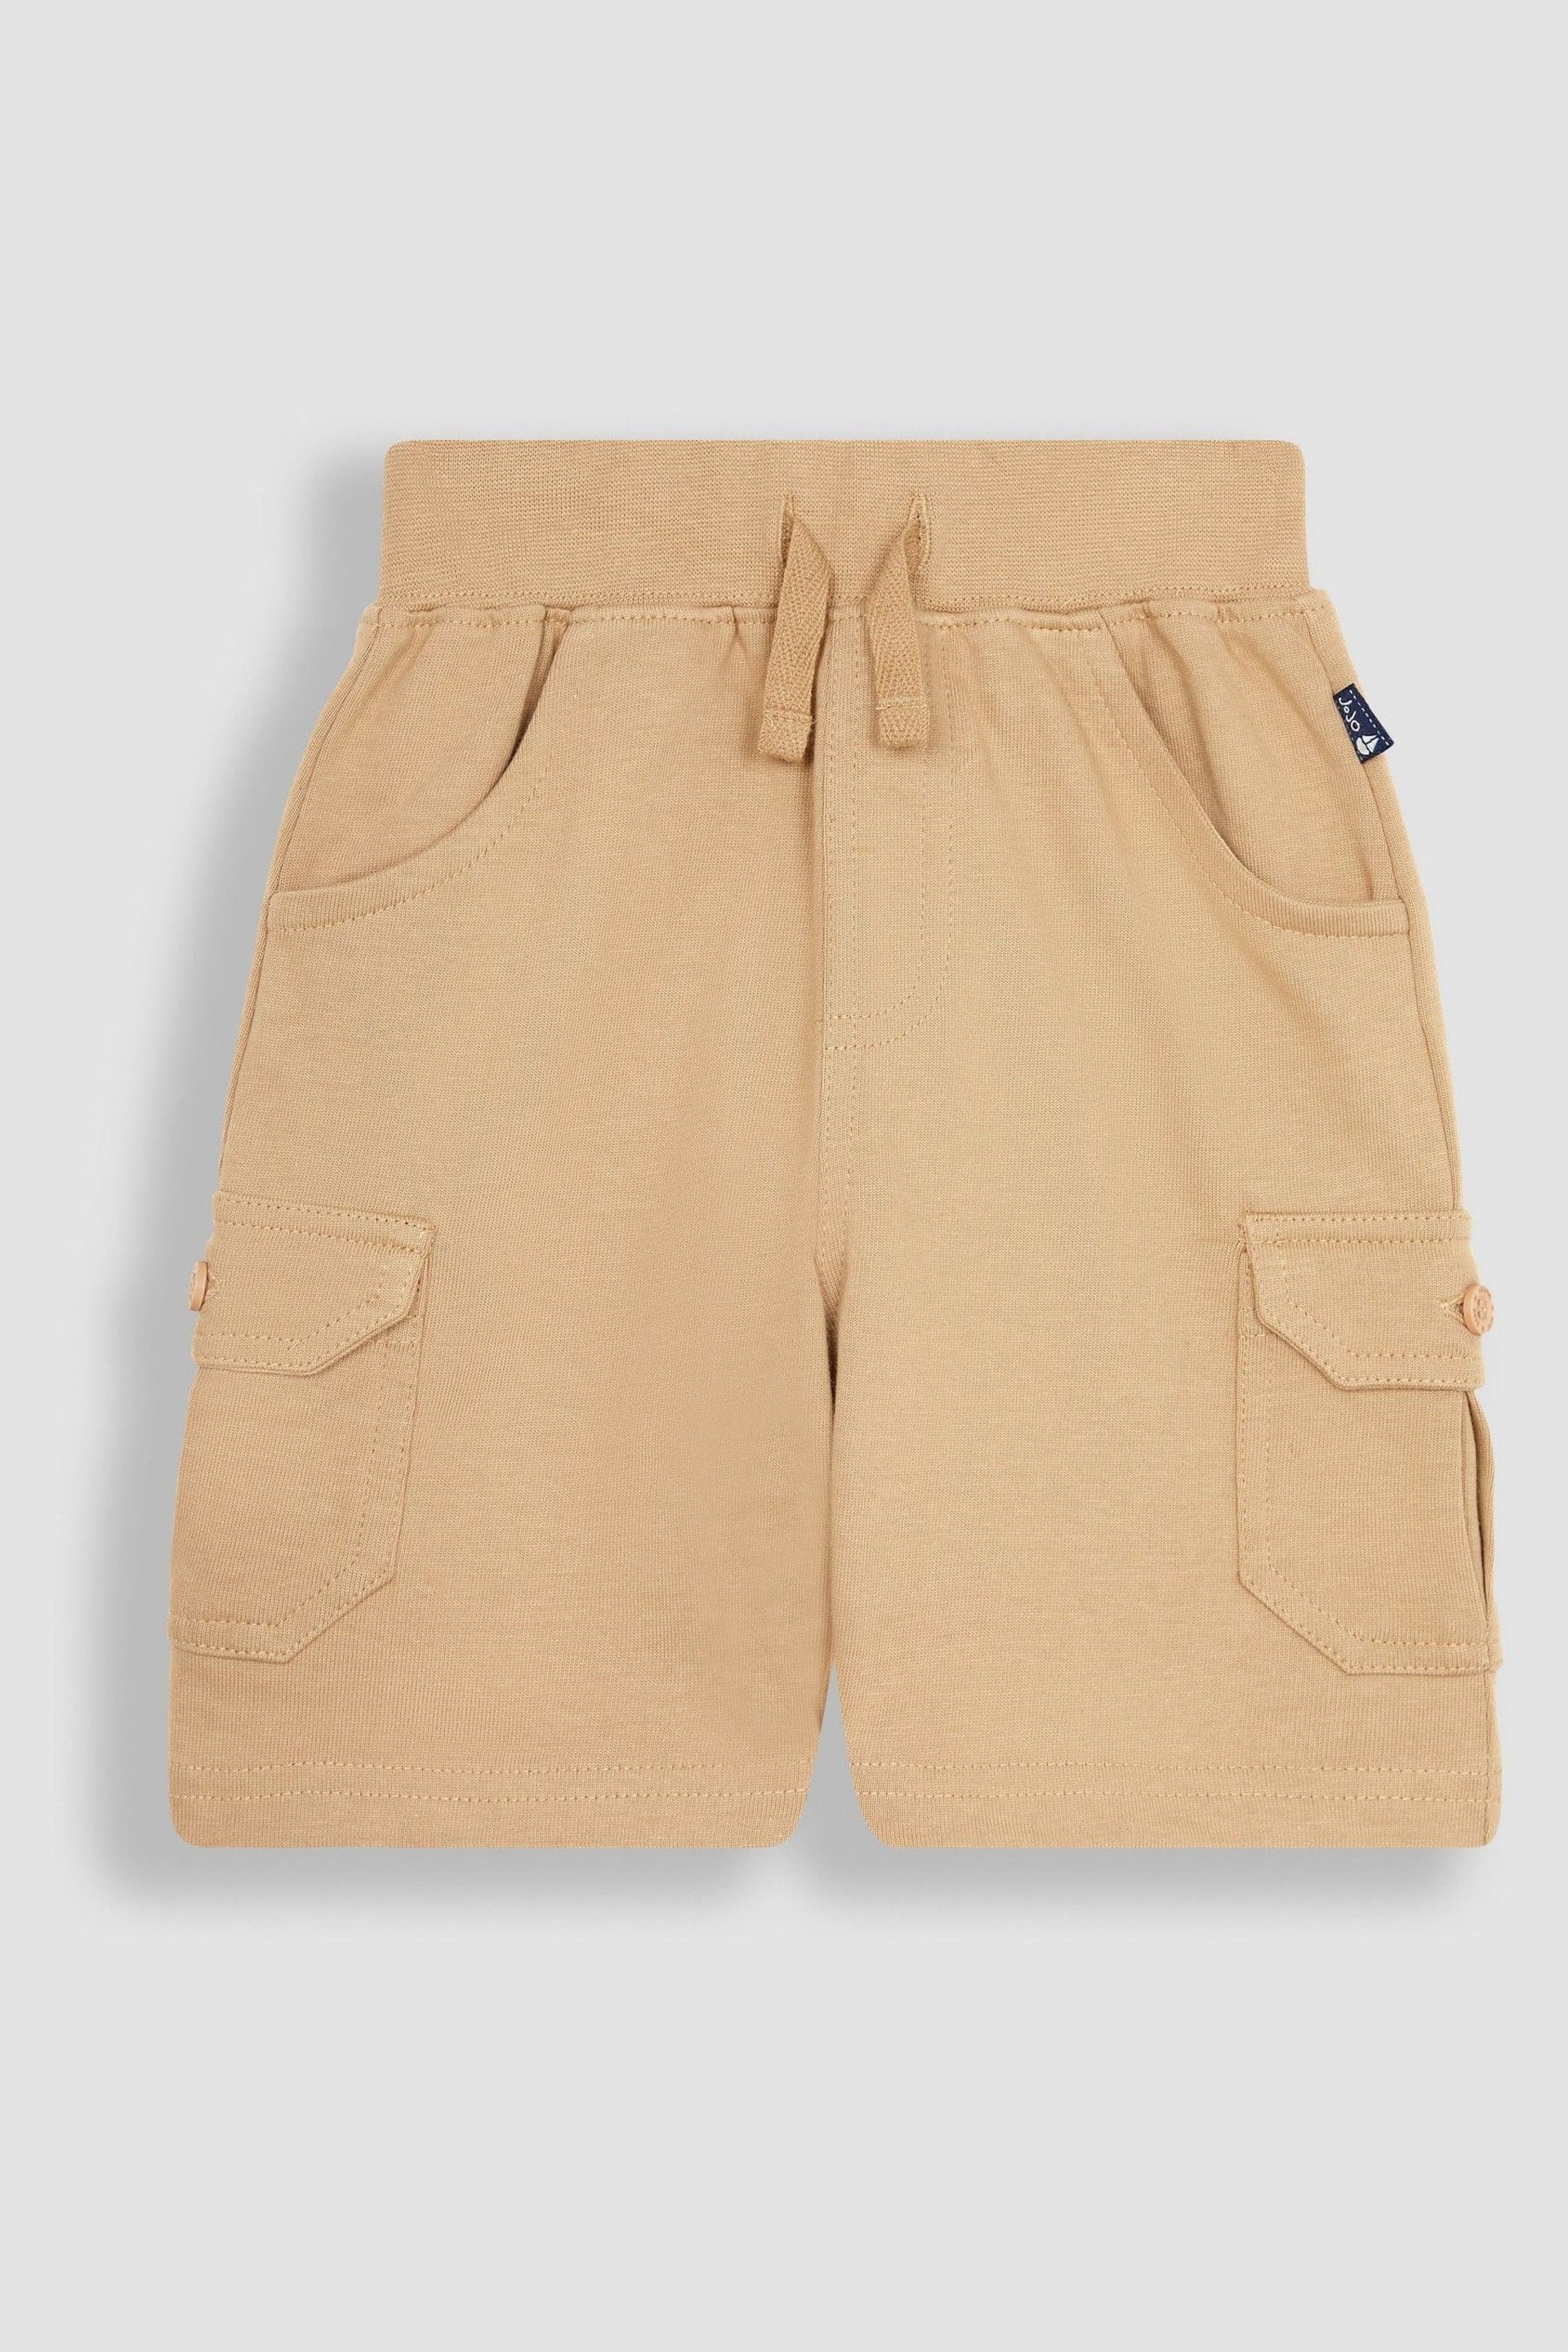 JoJo Maman Bébé Brown 2-Pack Jersey Cargo Shorts - Image 2 of 4